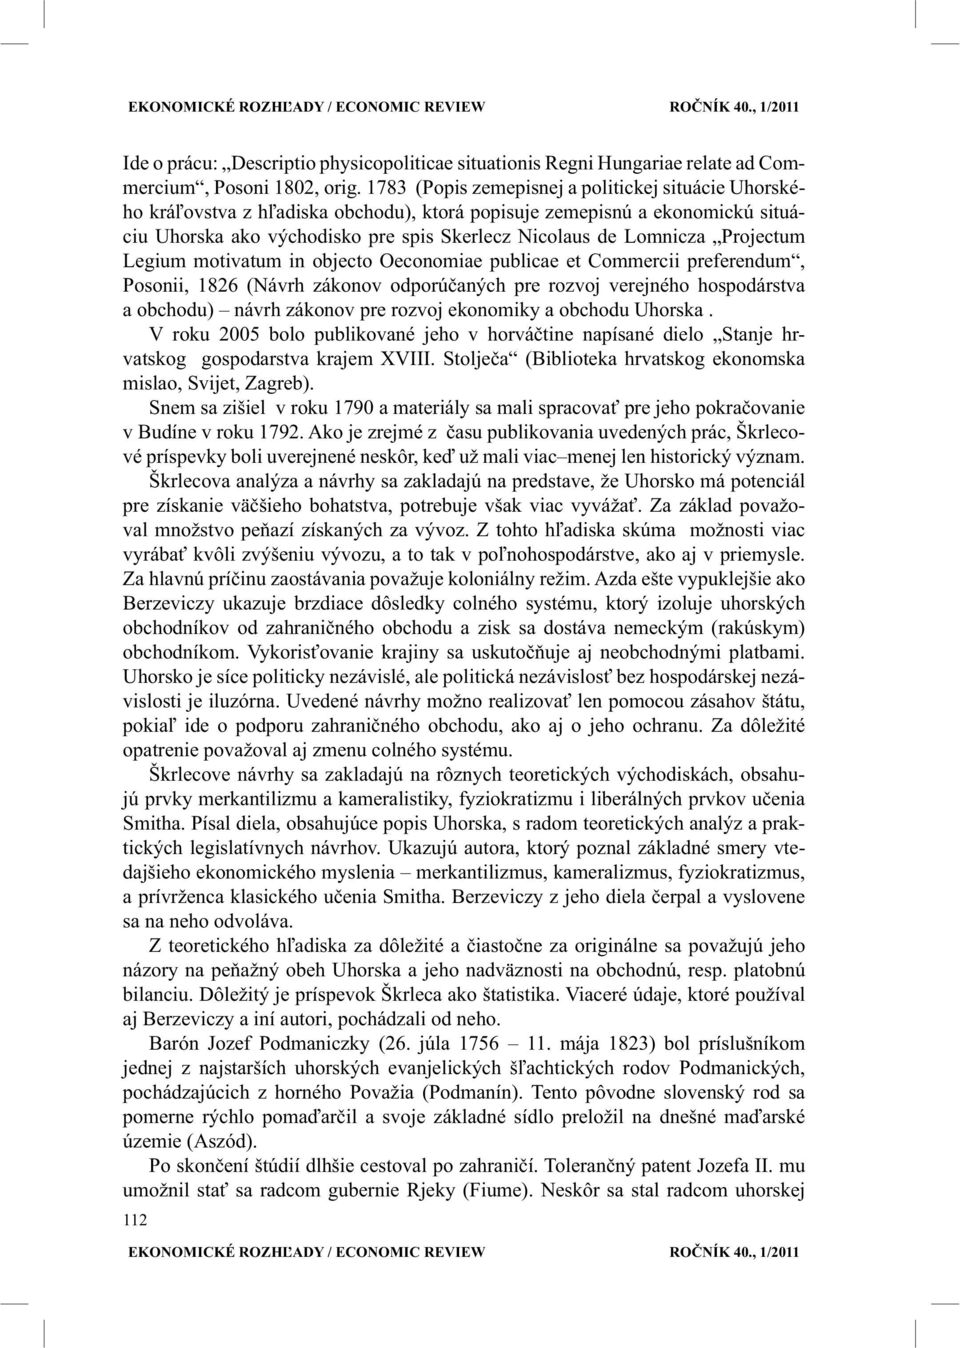 Projectum Legium motivatum in objecto Oeconomiae publicae et Commercii preferendum, Posonii, 1826 (Návrh zákonov odporúčaných pre rozvoj verejného hospodárstva a obchodu) návrh zákonov pre rozvoj